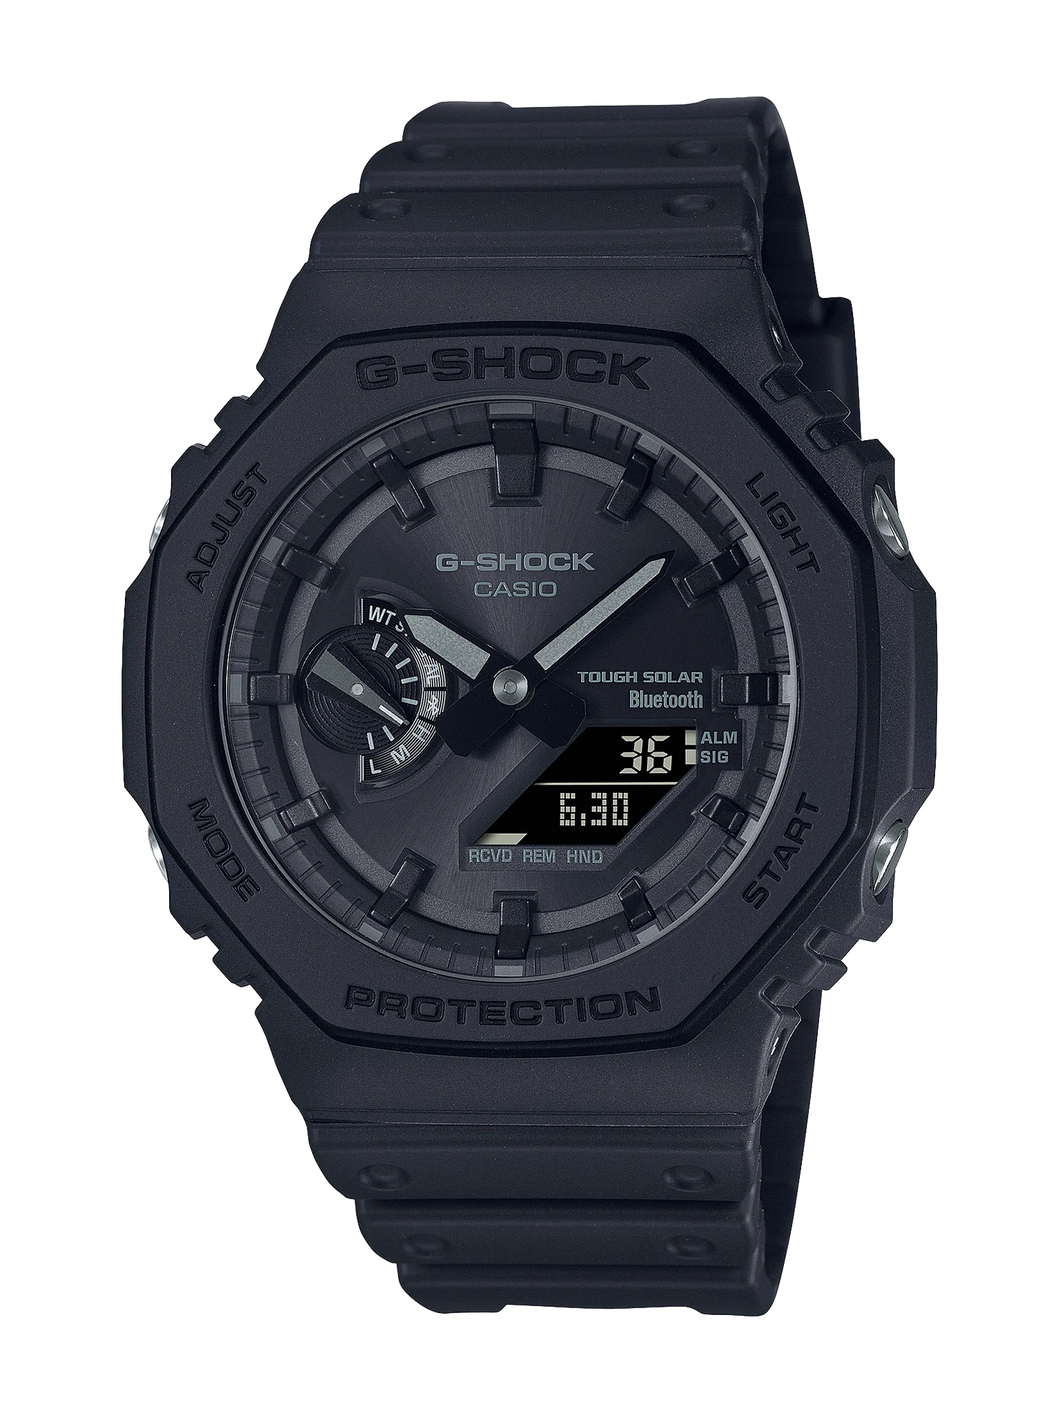 GAB2100-1A1 G-SHOCK Bluetooth Solar Watch